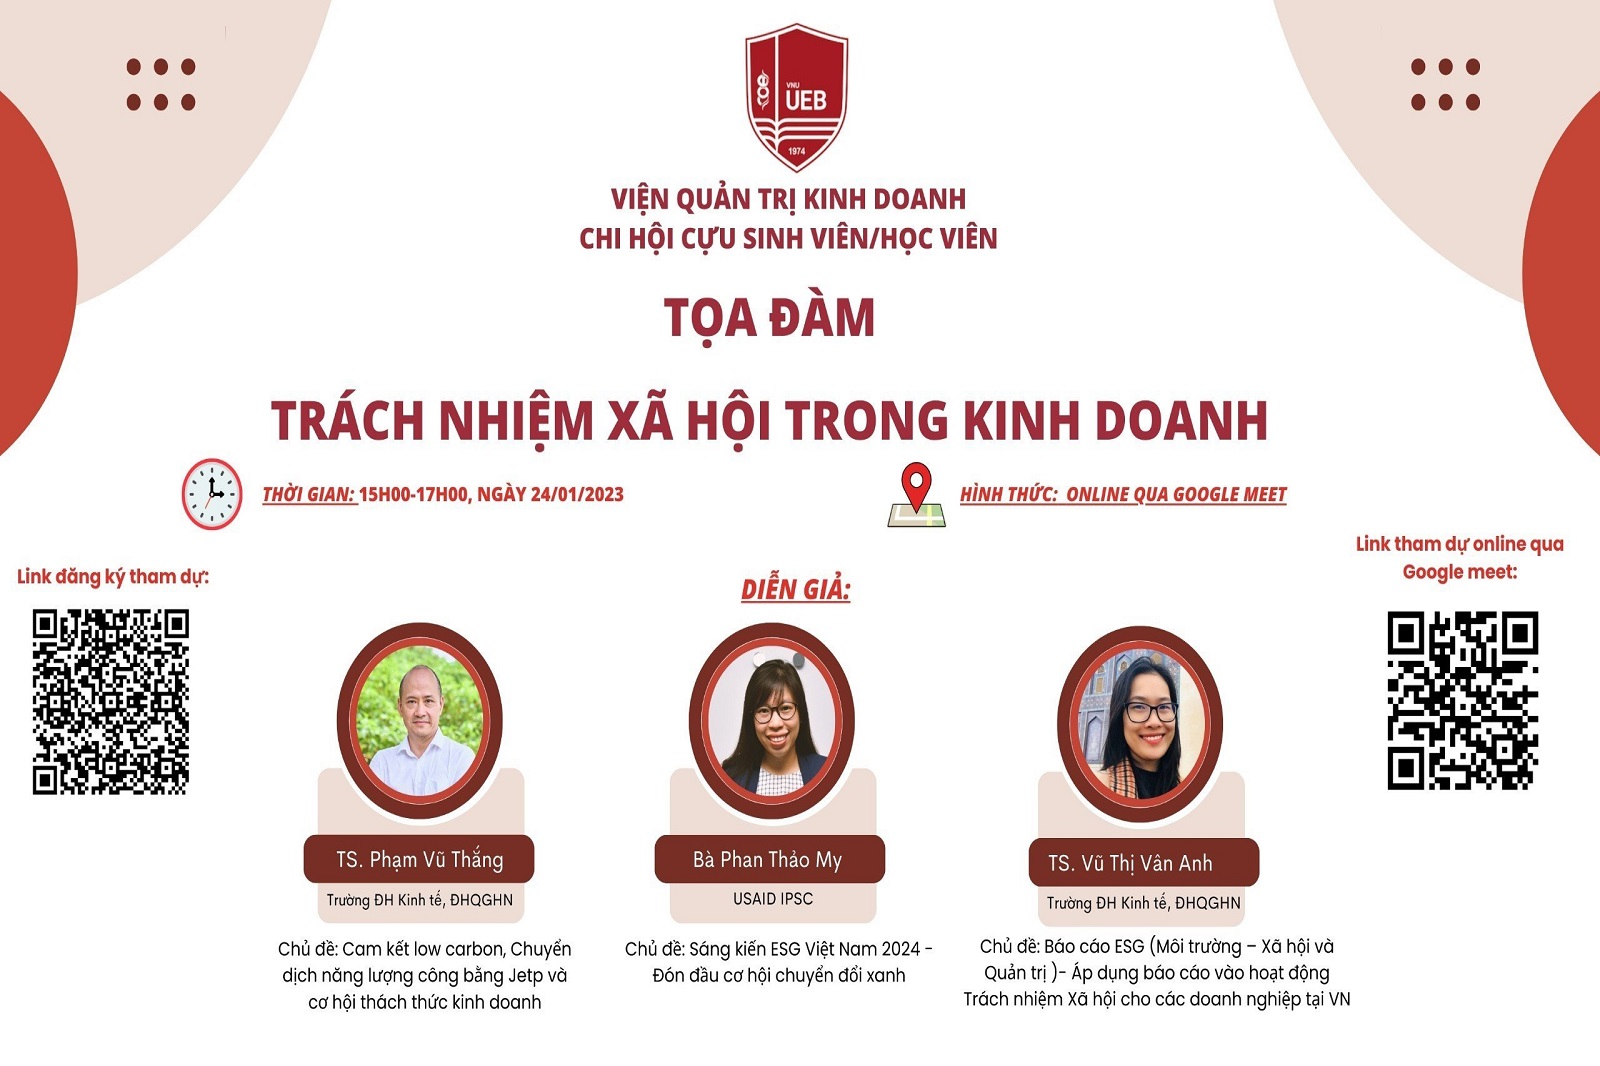 Trách nhiệm xã hội và môi trường trong kinh doanh ở Việt Nam 